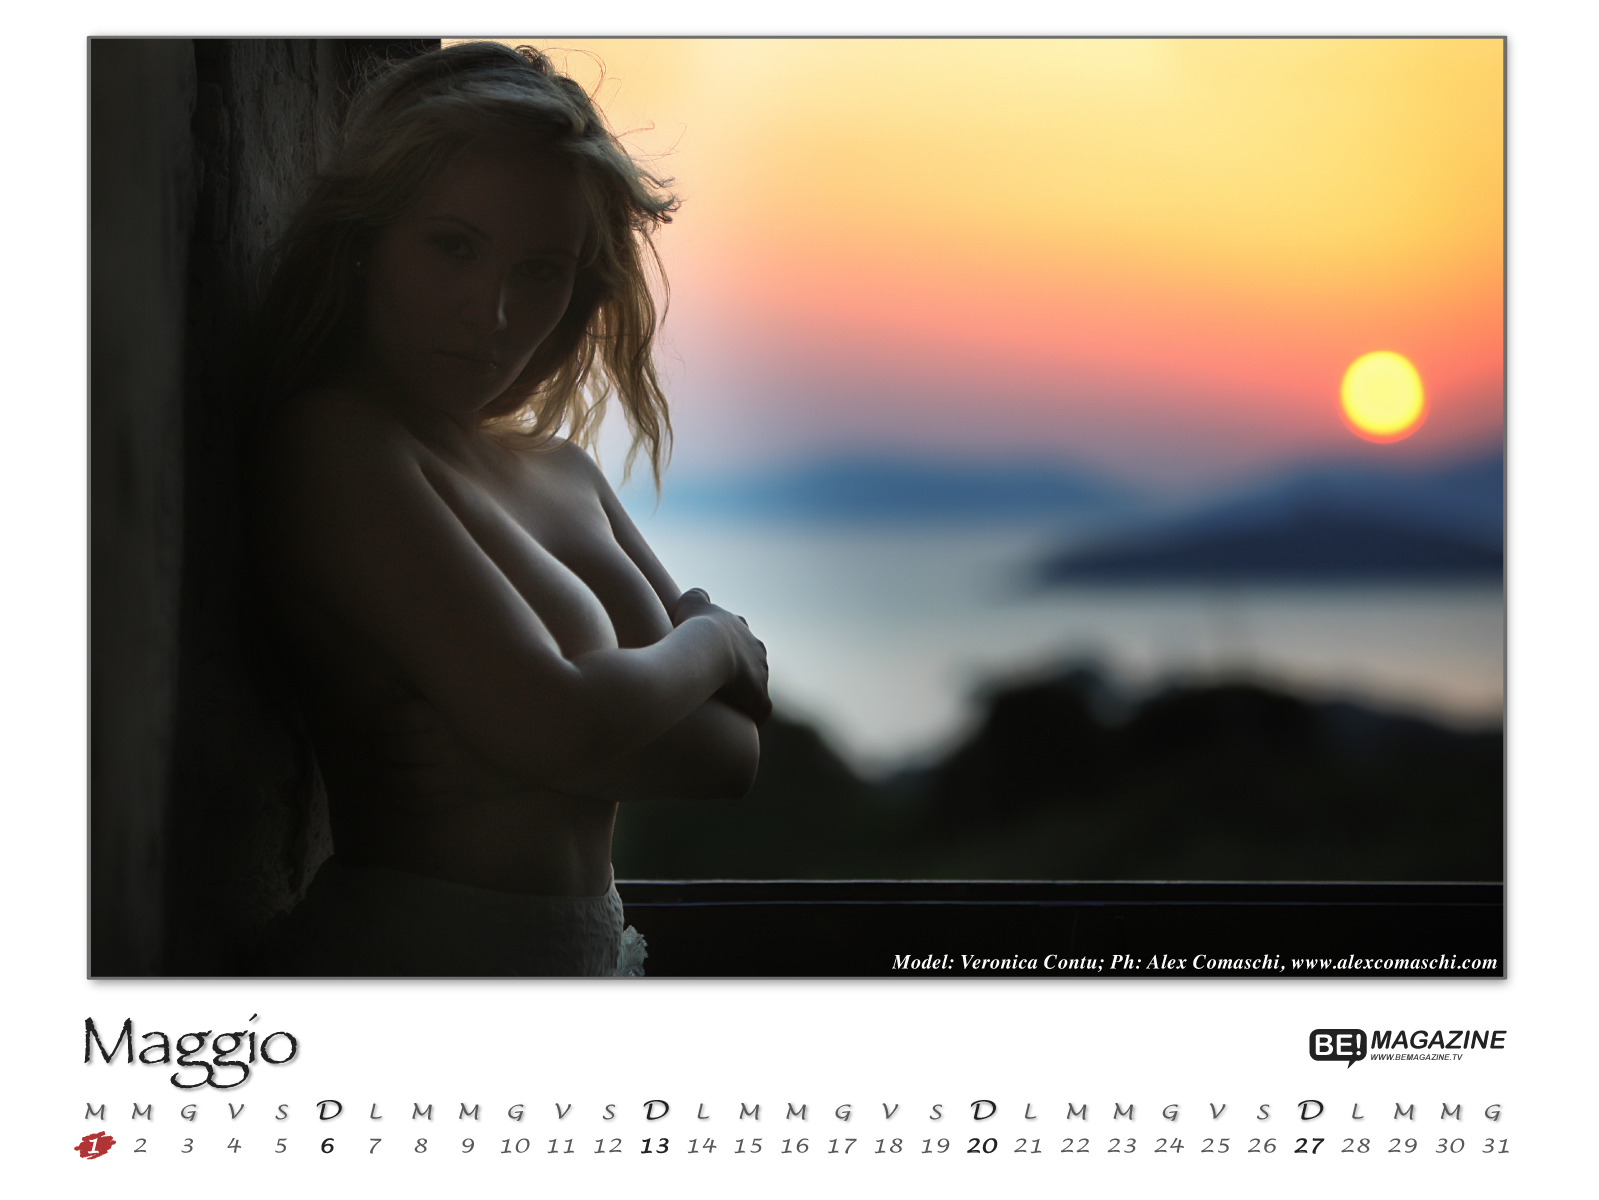 Be! Magazine - Official Wallpaper Calendar 2012 | 123 Hot Calendars